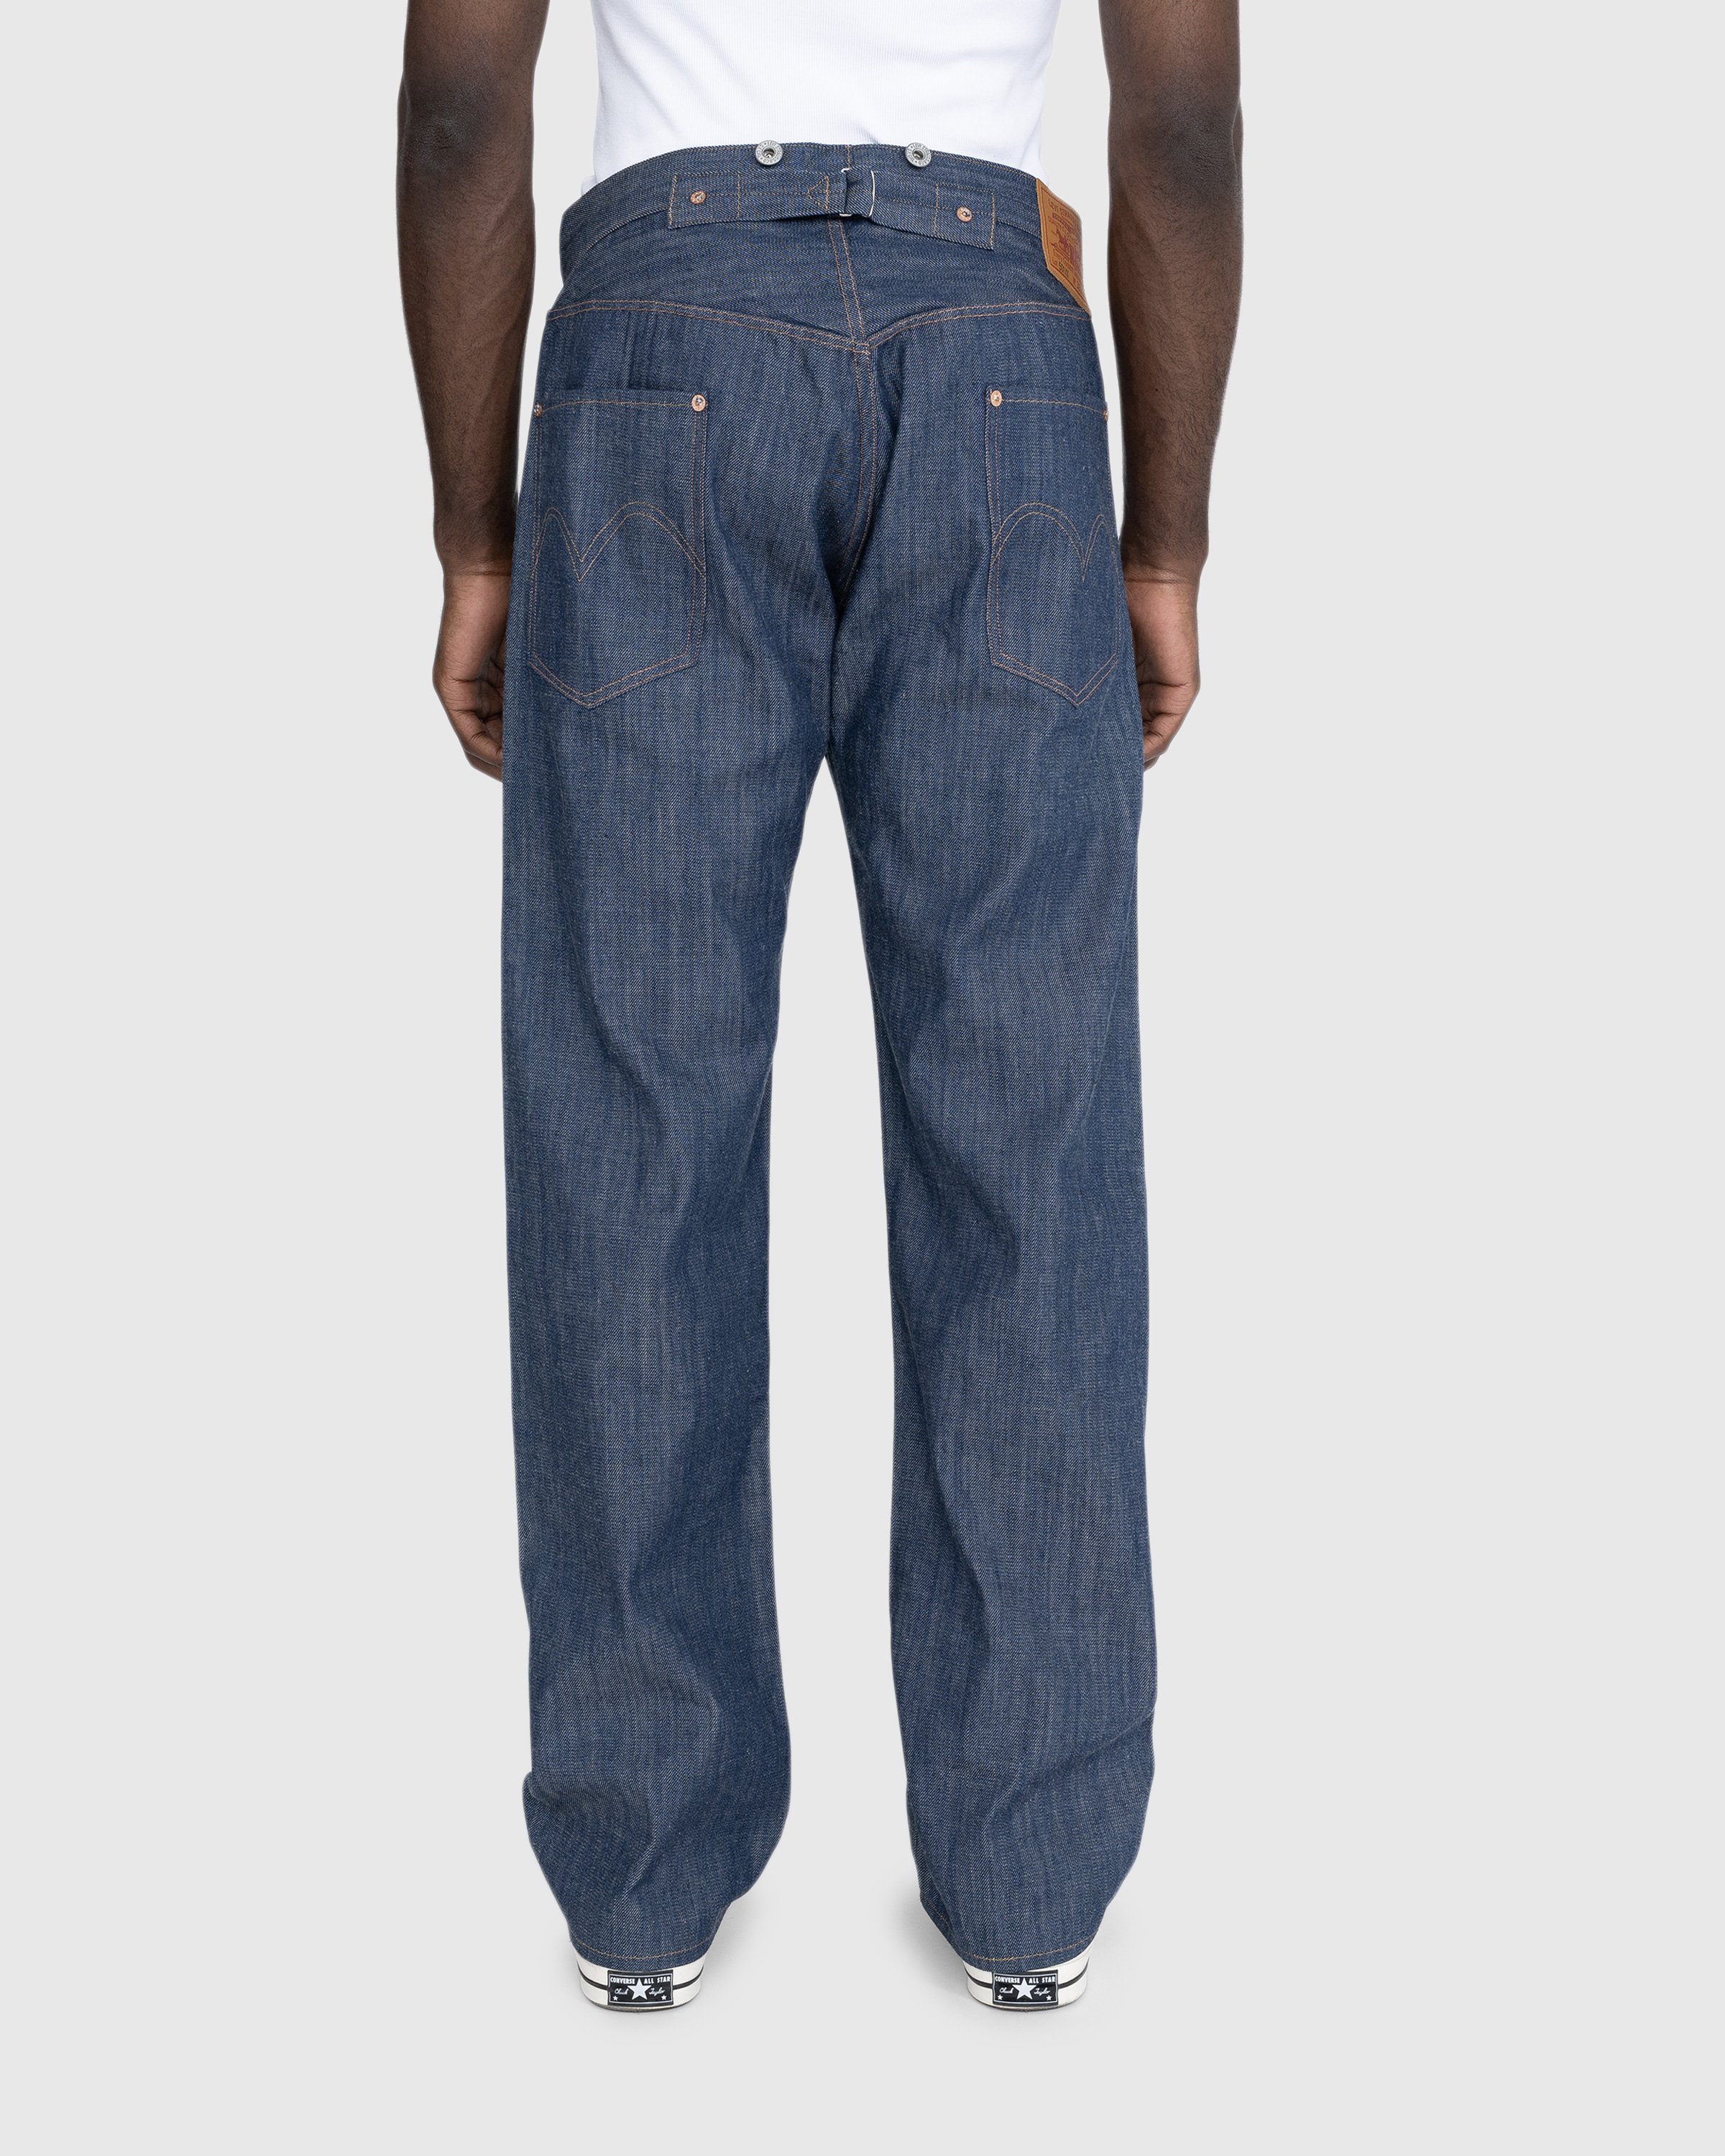 Levi's - 1901 501 Jeans Dark Indigo Flat Finish - Clothing - Blue - Image 4